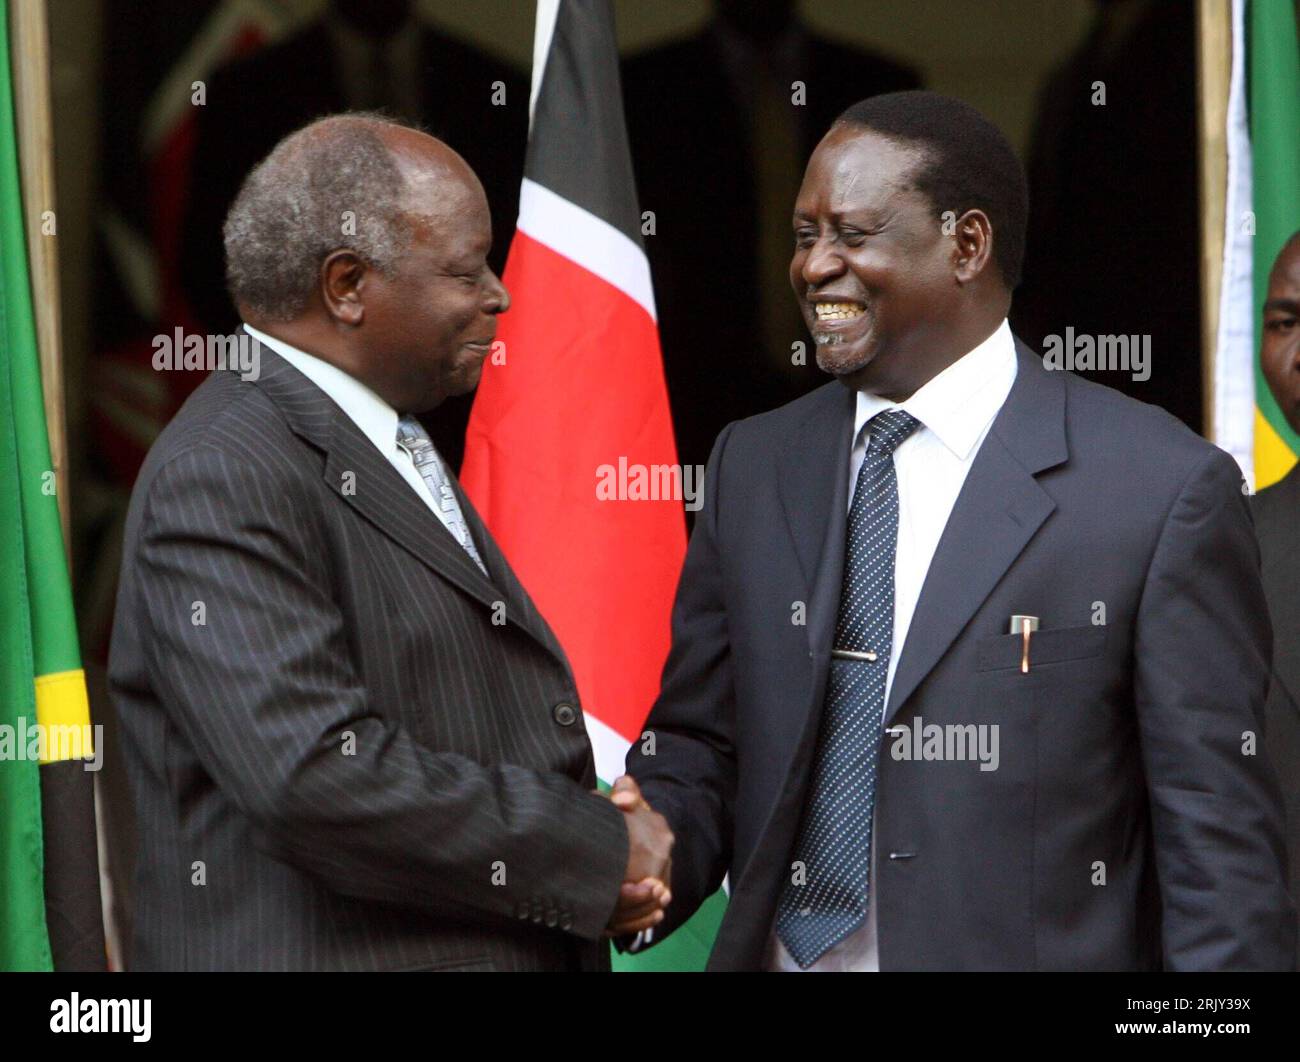 Bildnummer: 52433160  Datum: 28.02.2008  Copyright: imago/Xinhua Staatspräsident Mwai Kibaki (li., Kenia) und Oppositionsführer Raila Amollo Odinga (Kenia) nach der Unterzeichnung einer Vereinbarung für eine Koalitionsregierung in Nairobi - PUBLICATIONxNOTxINxCHN, Personen , premiumd , premiumd; 2008, Nairobi, Kenia, Politik, Politiker, Präsident, shake hands, shakehands,; , quer, Kbdig, Gruppenbild, close, Randbild, People, Afrika Stock Photo